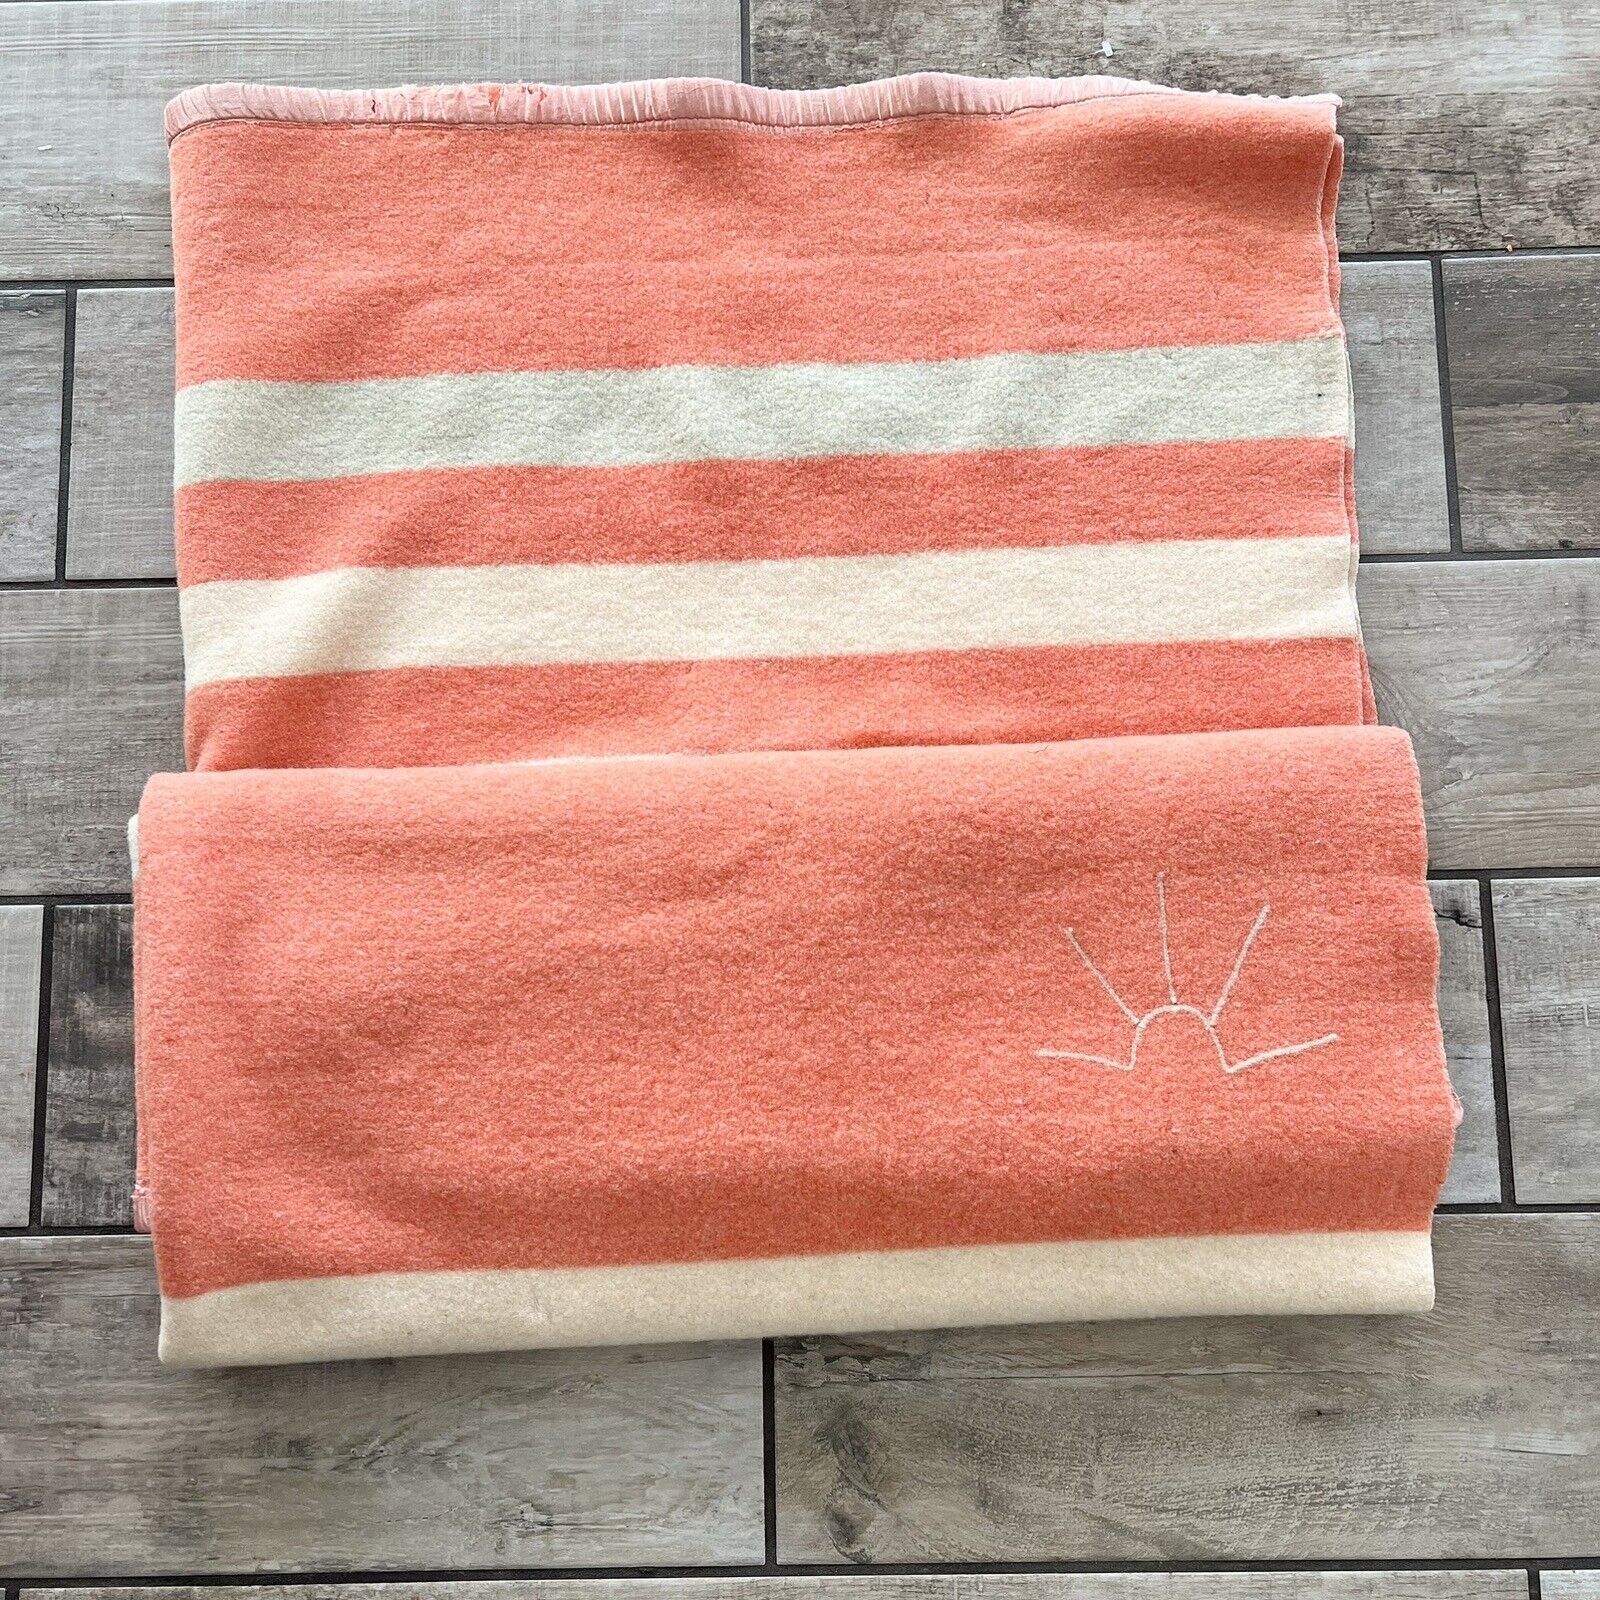 Vintage Baron Woolen Mills Striped Rising Sun Blanket 75 x 59 Peach Orange